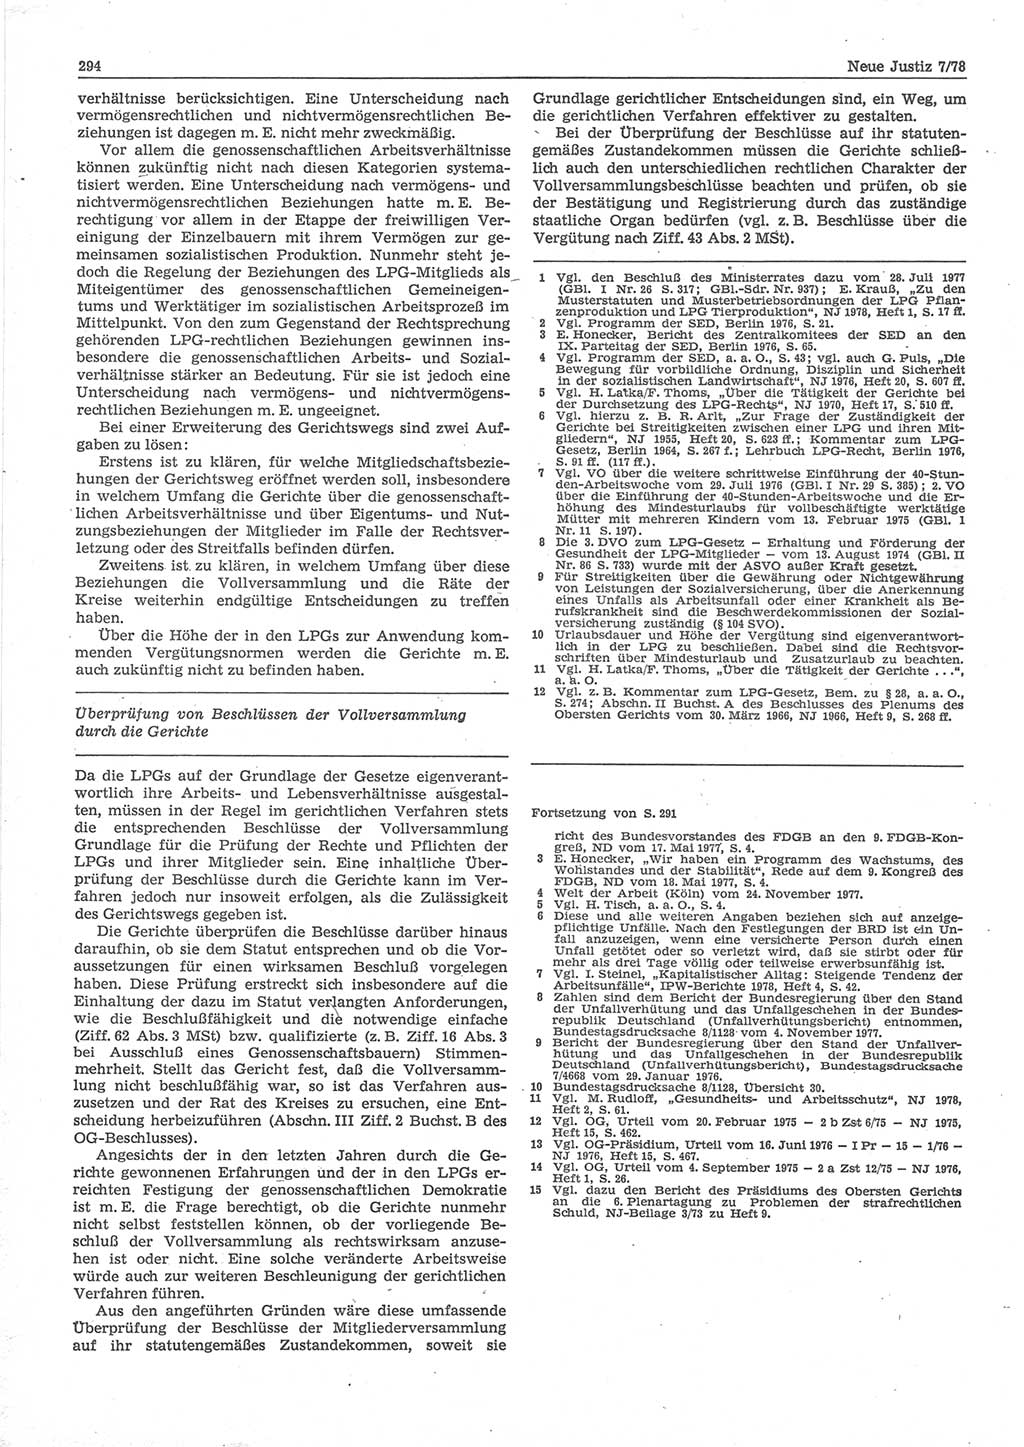 Neue Justiz (NJ), Zeitschrift für sozialistisches Recht und Gesetzlichkeit [Deutsche Demokratische Republik (DDR)], 32. Jahrgang 1978, Seite 294 (NJ DDR 1978, S. 294)